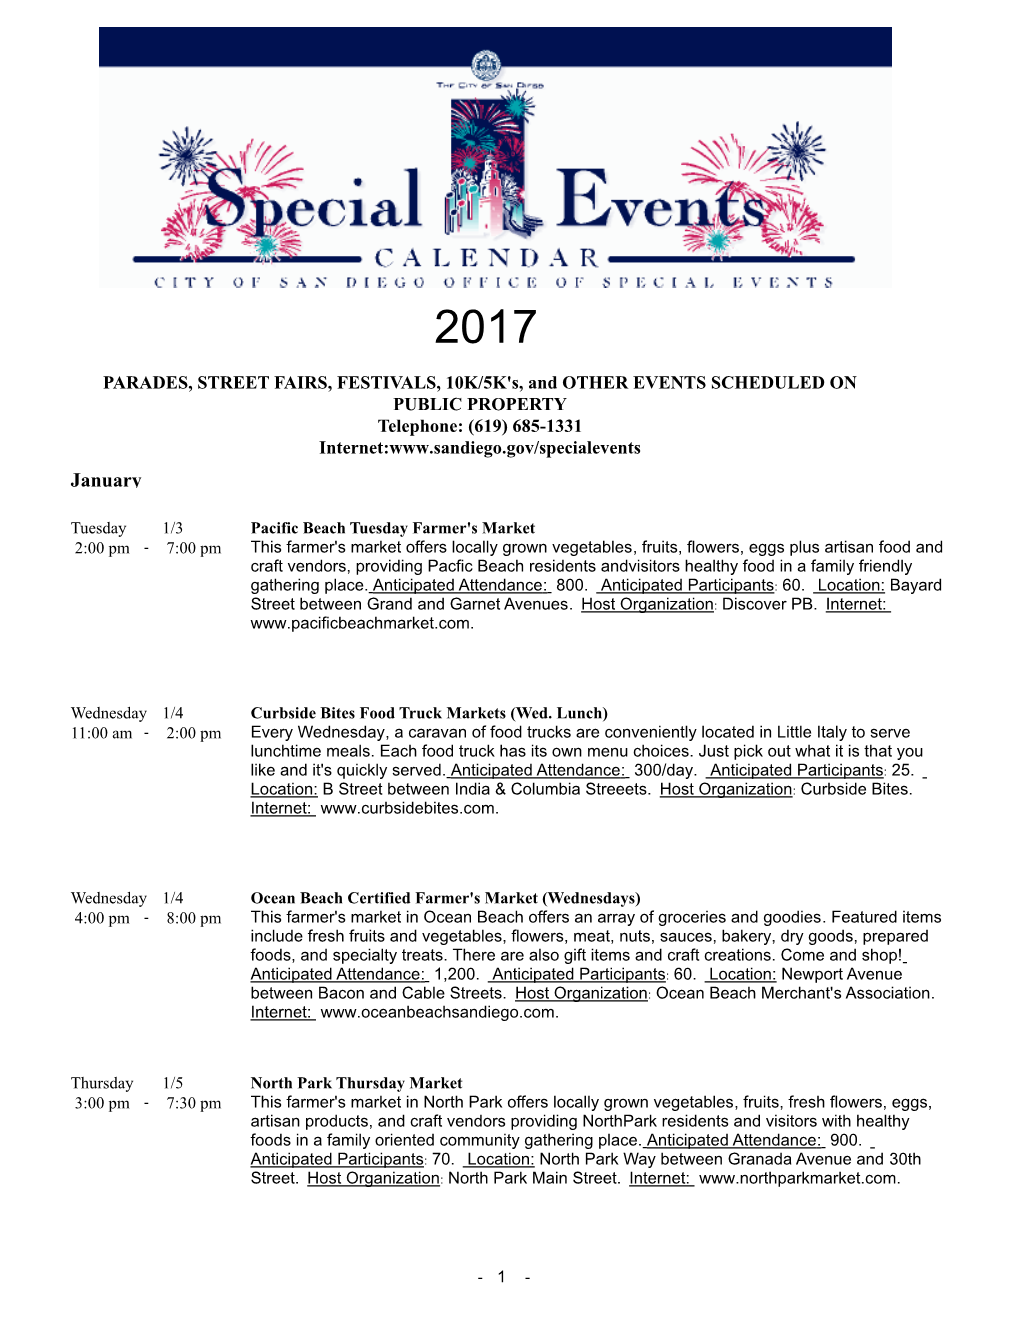 Special Events Calendar